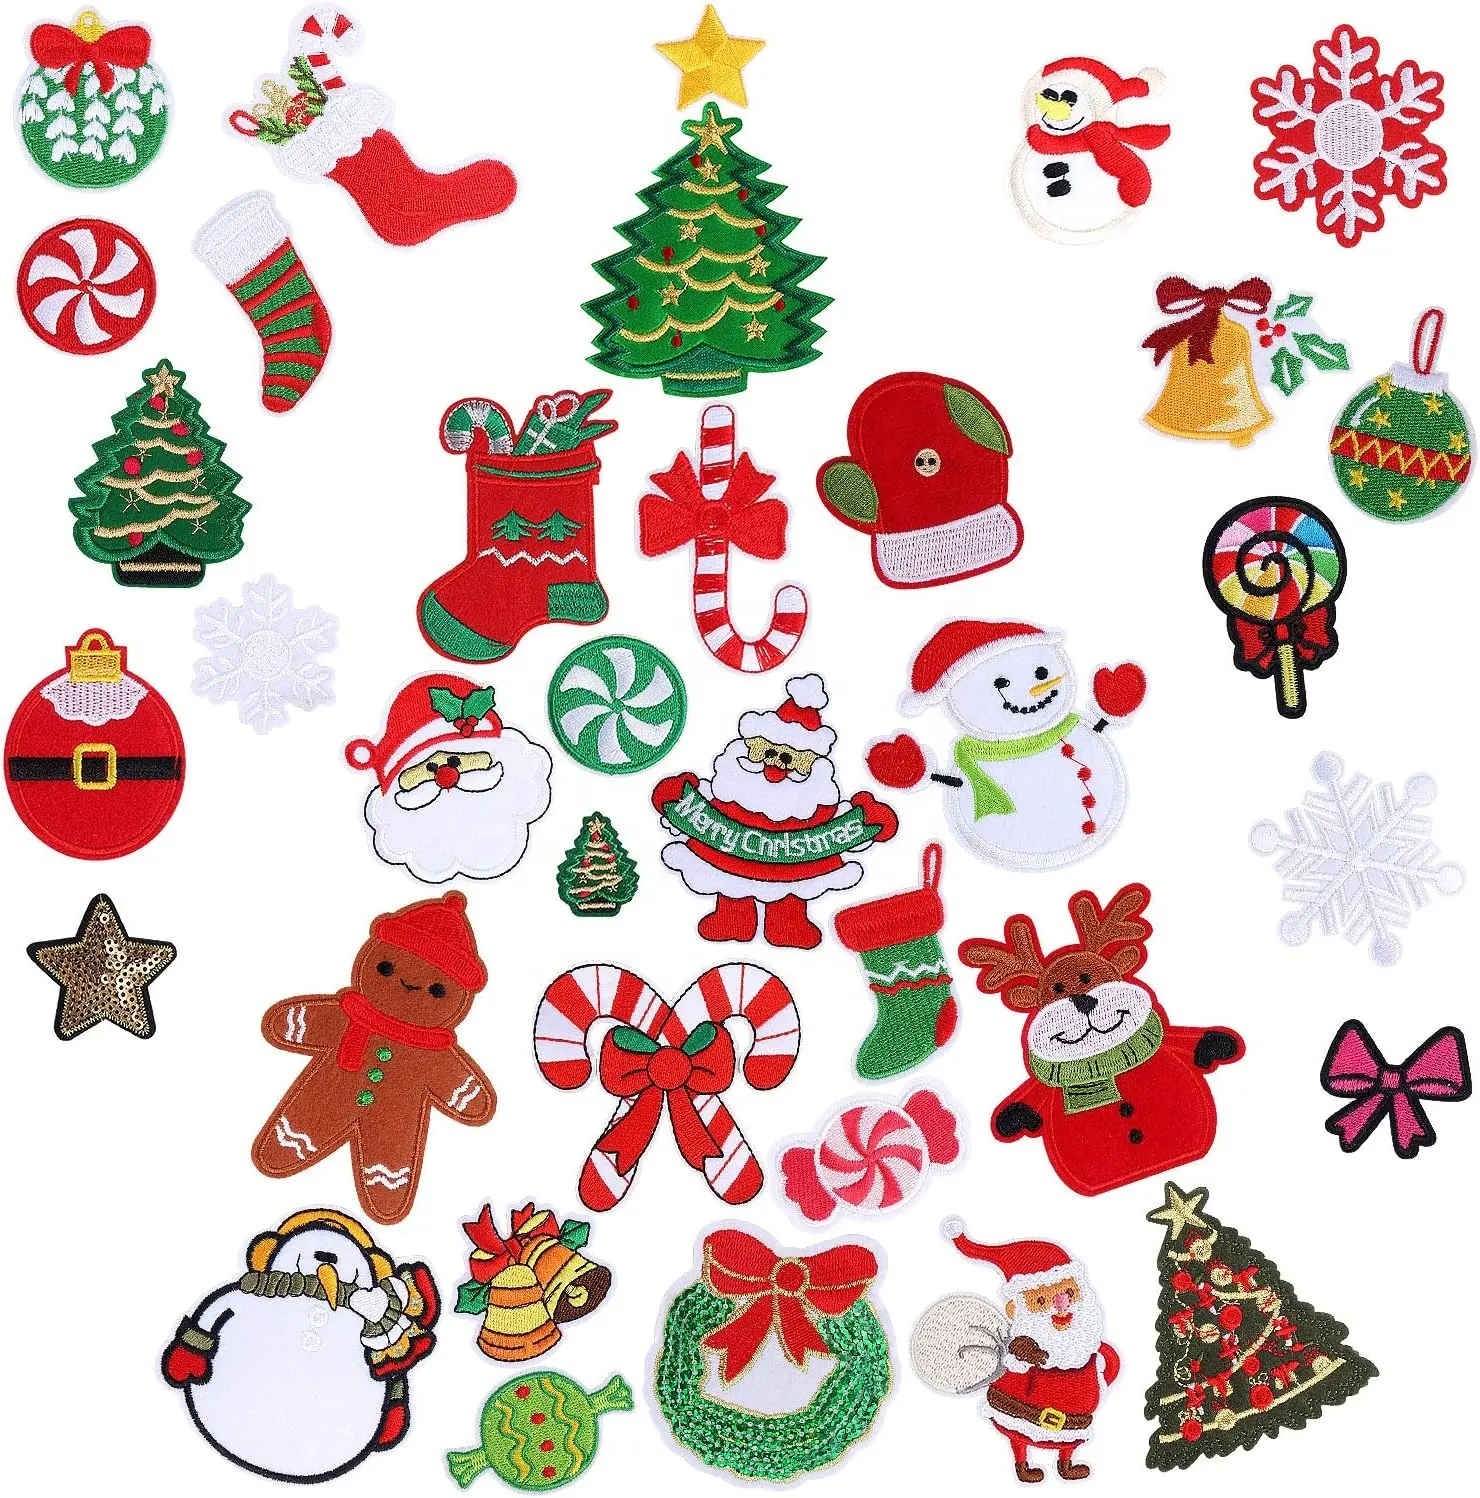 Venta caliente al por mayor de Navidad parche de hierro en bordado personalizado Santa parche insignias para ropa niños